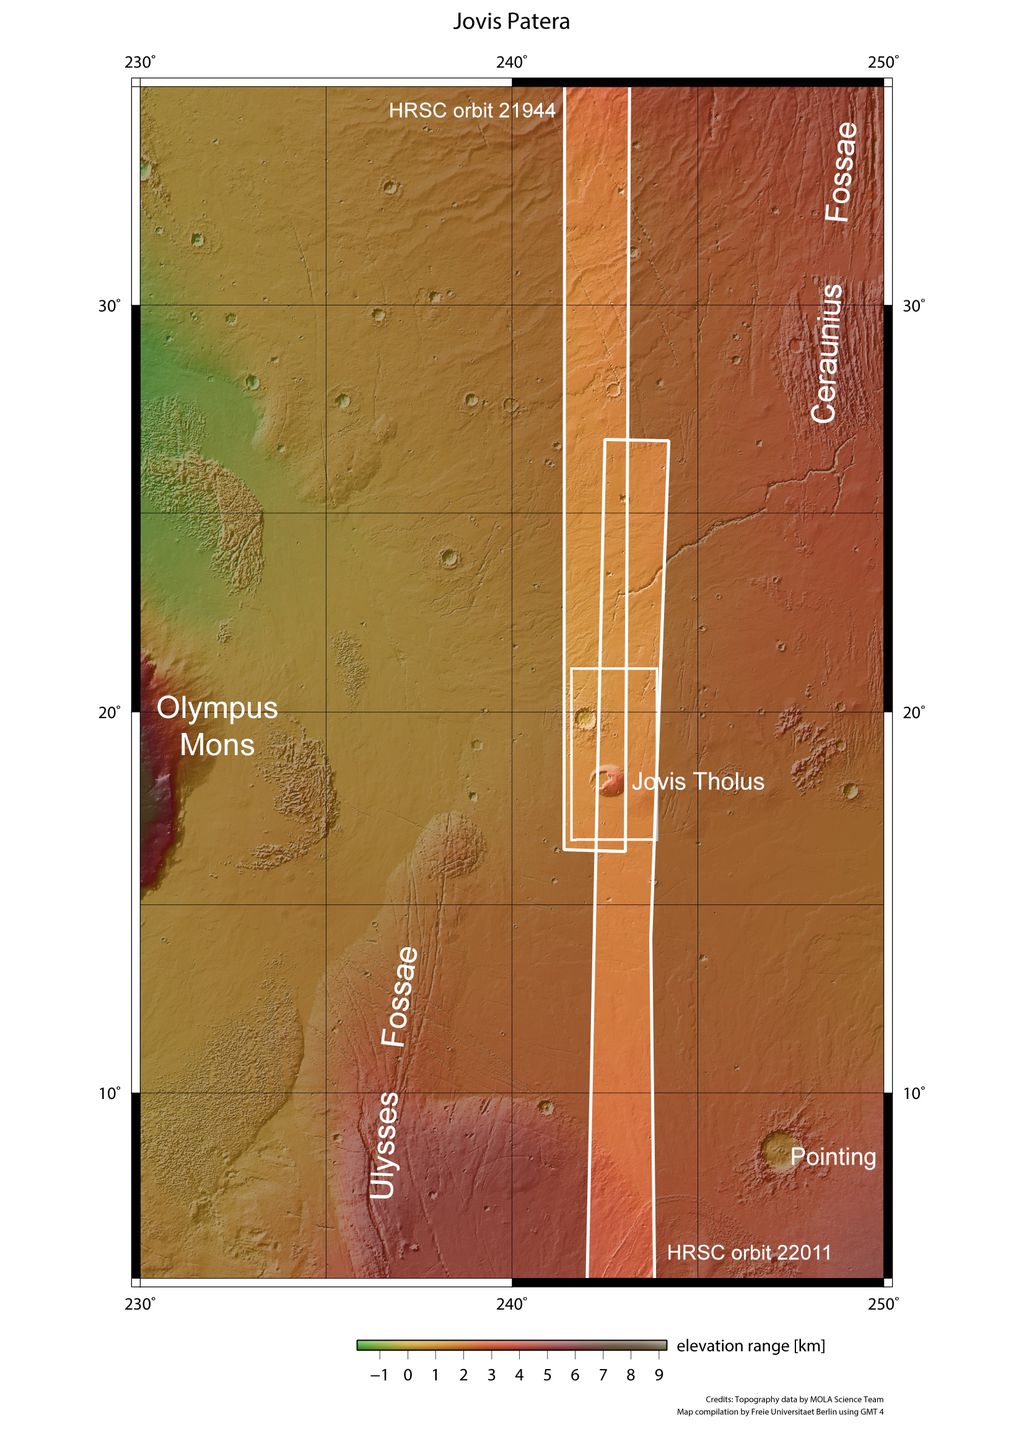 A imagem mais ampla é o resultado de dois registros feitos em 13 de maio e 2 de junho de 2021 pela Mars Express (Imagem: Reprodução/NASA/MGS/MOLA Science Team)